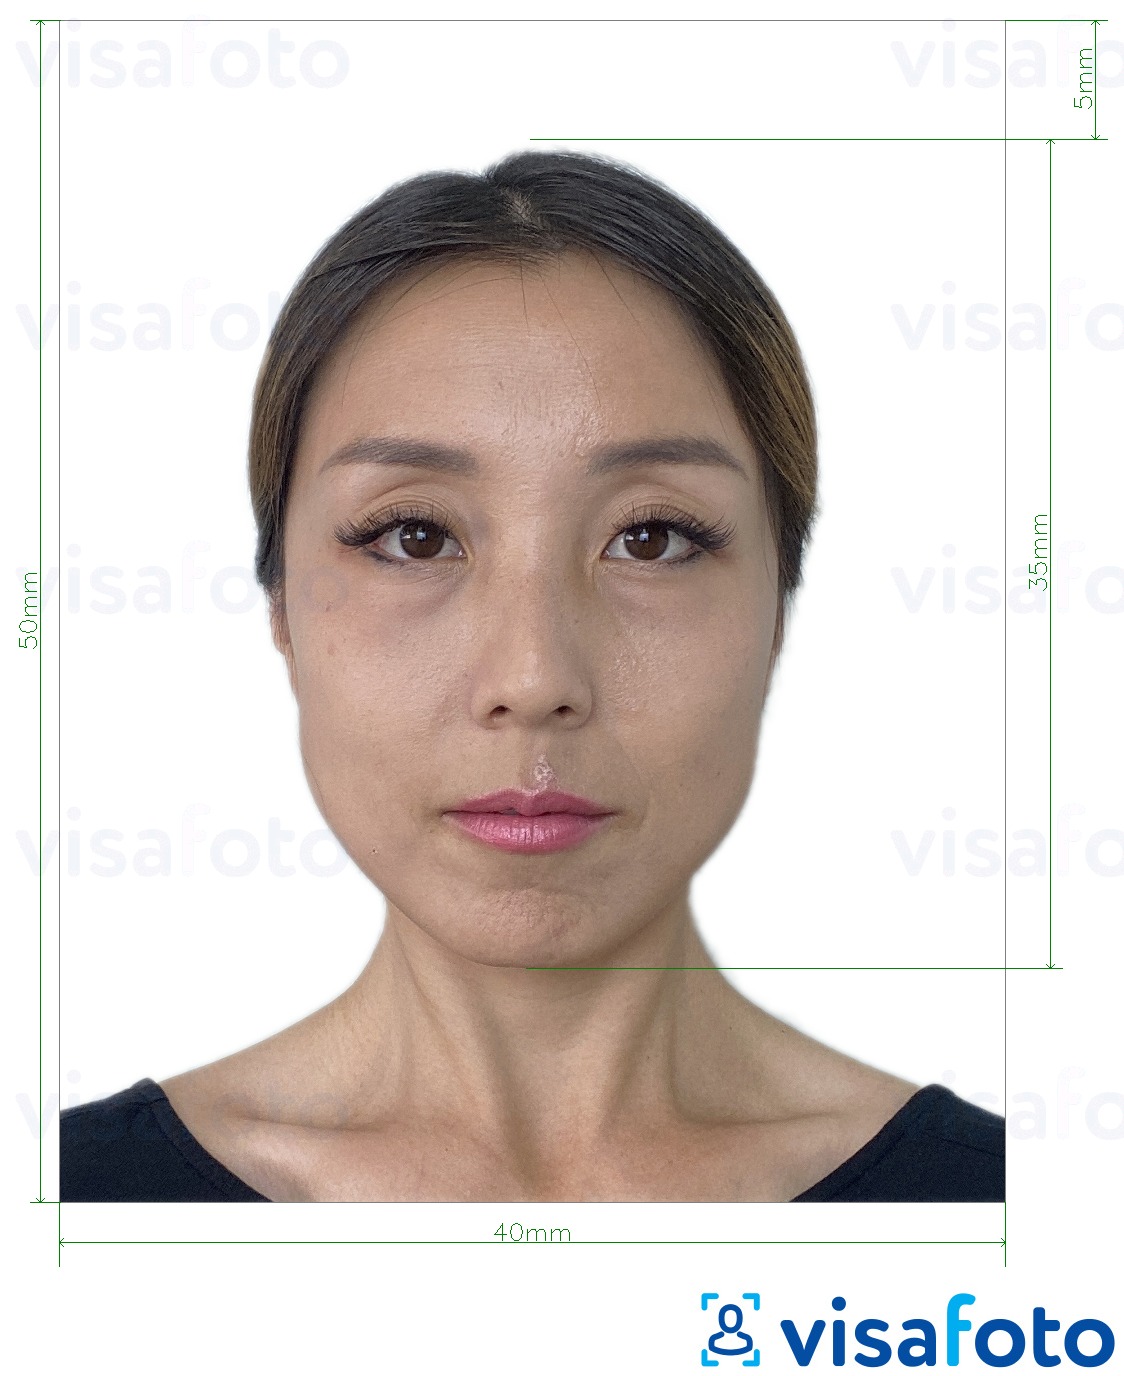 Contoh dari foto untuk Paspor Hong Kong 40x50 mm (4x5 cm) dengan ukuran spesifikasi yang tepat